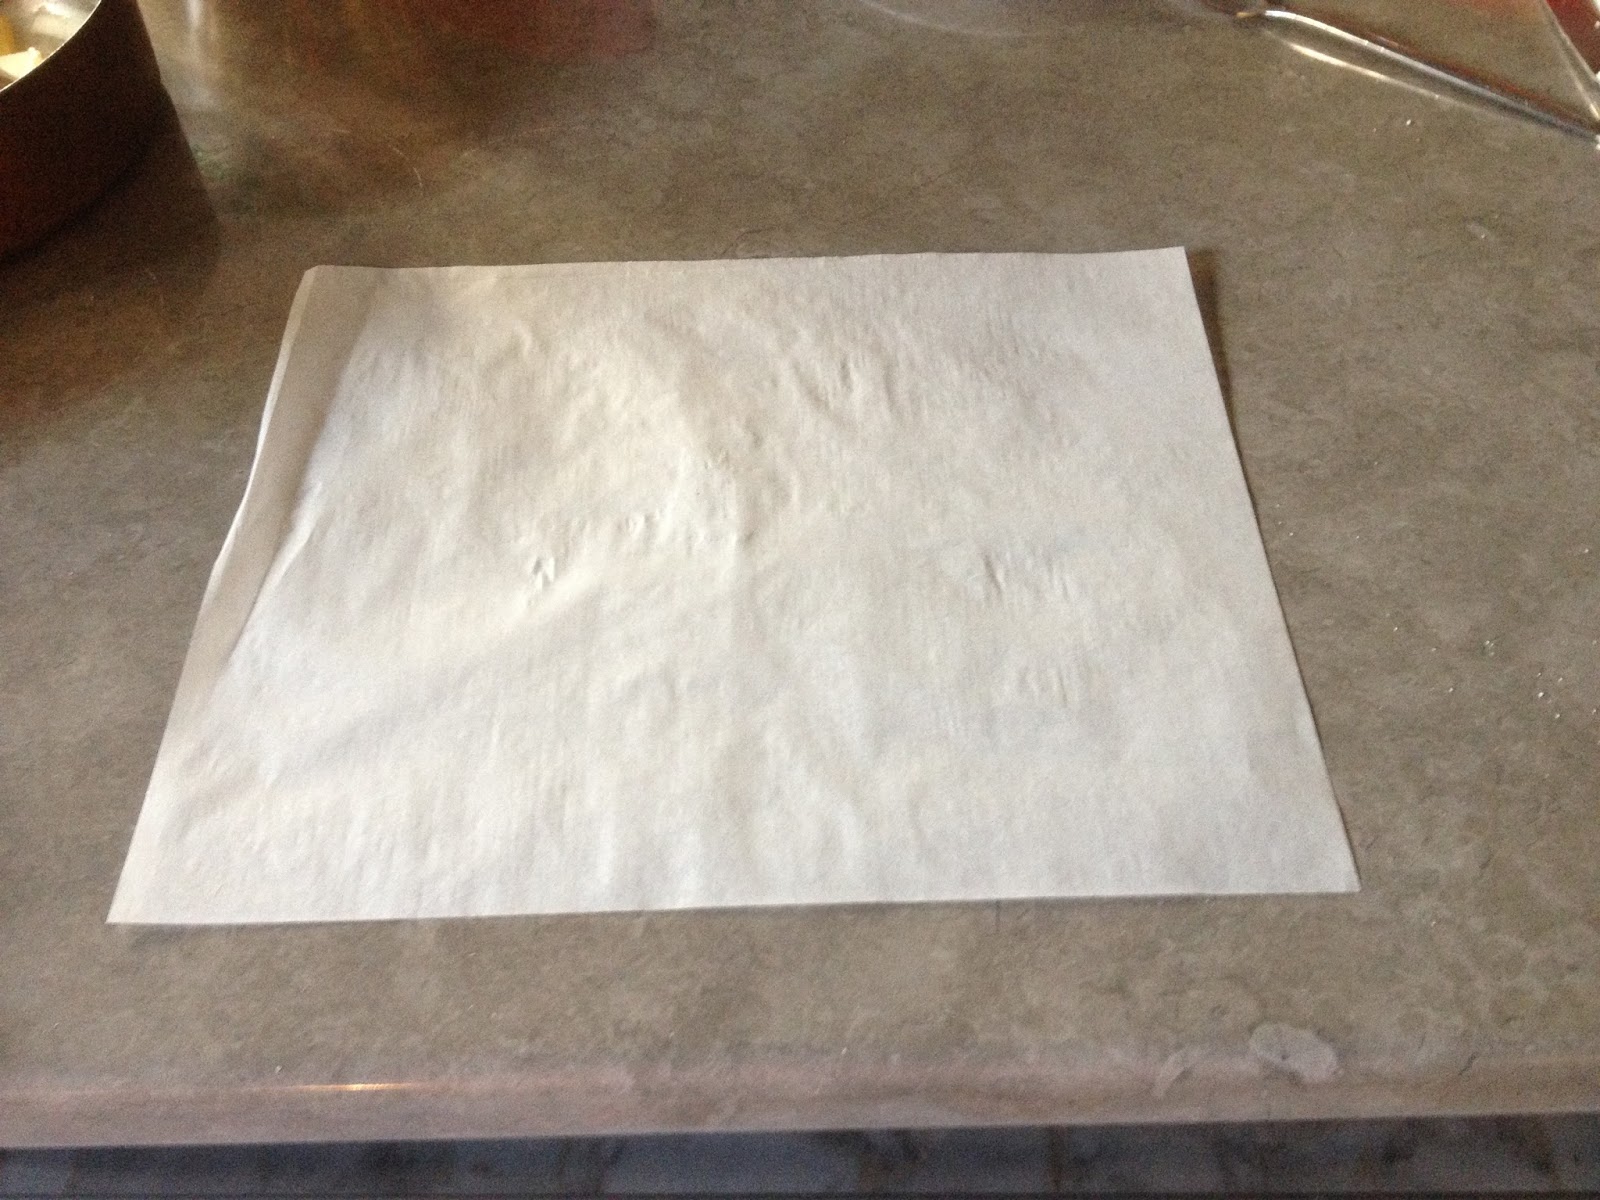 Réaliser un couvercle en papier sulfurisé